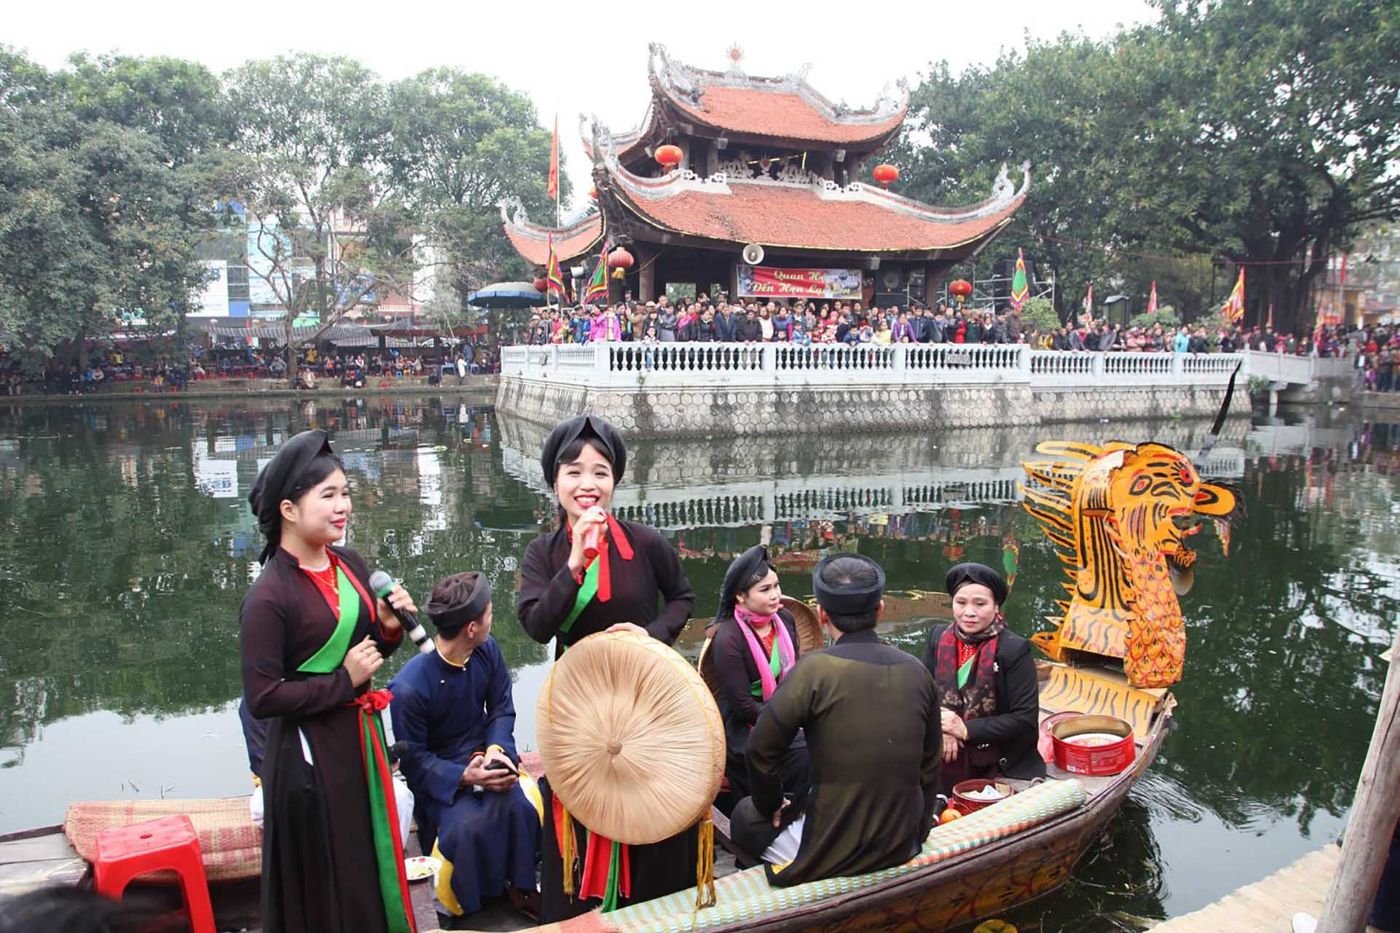 Lim Festival - Vietnam's festivals and holidays